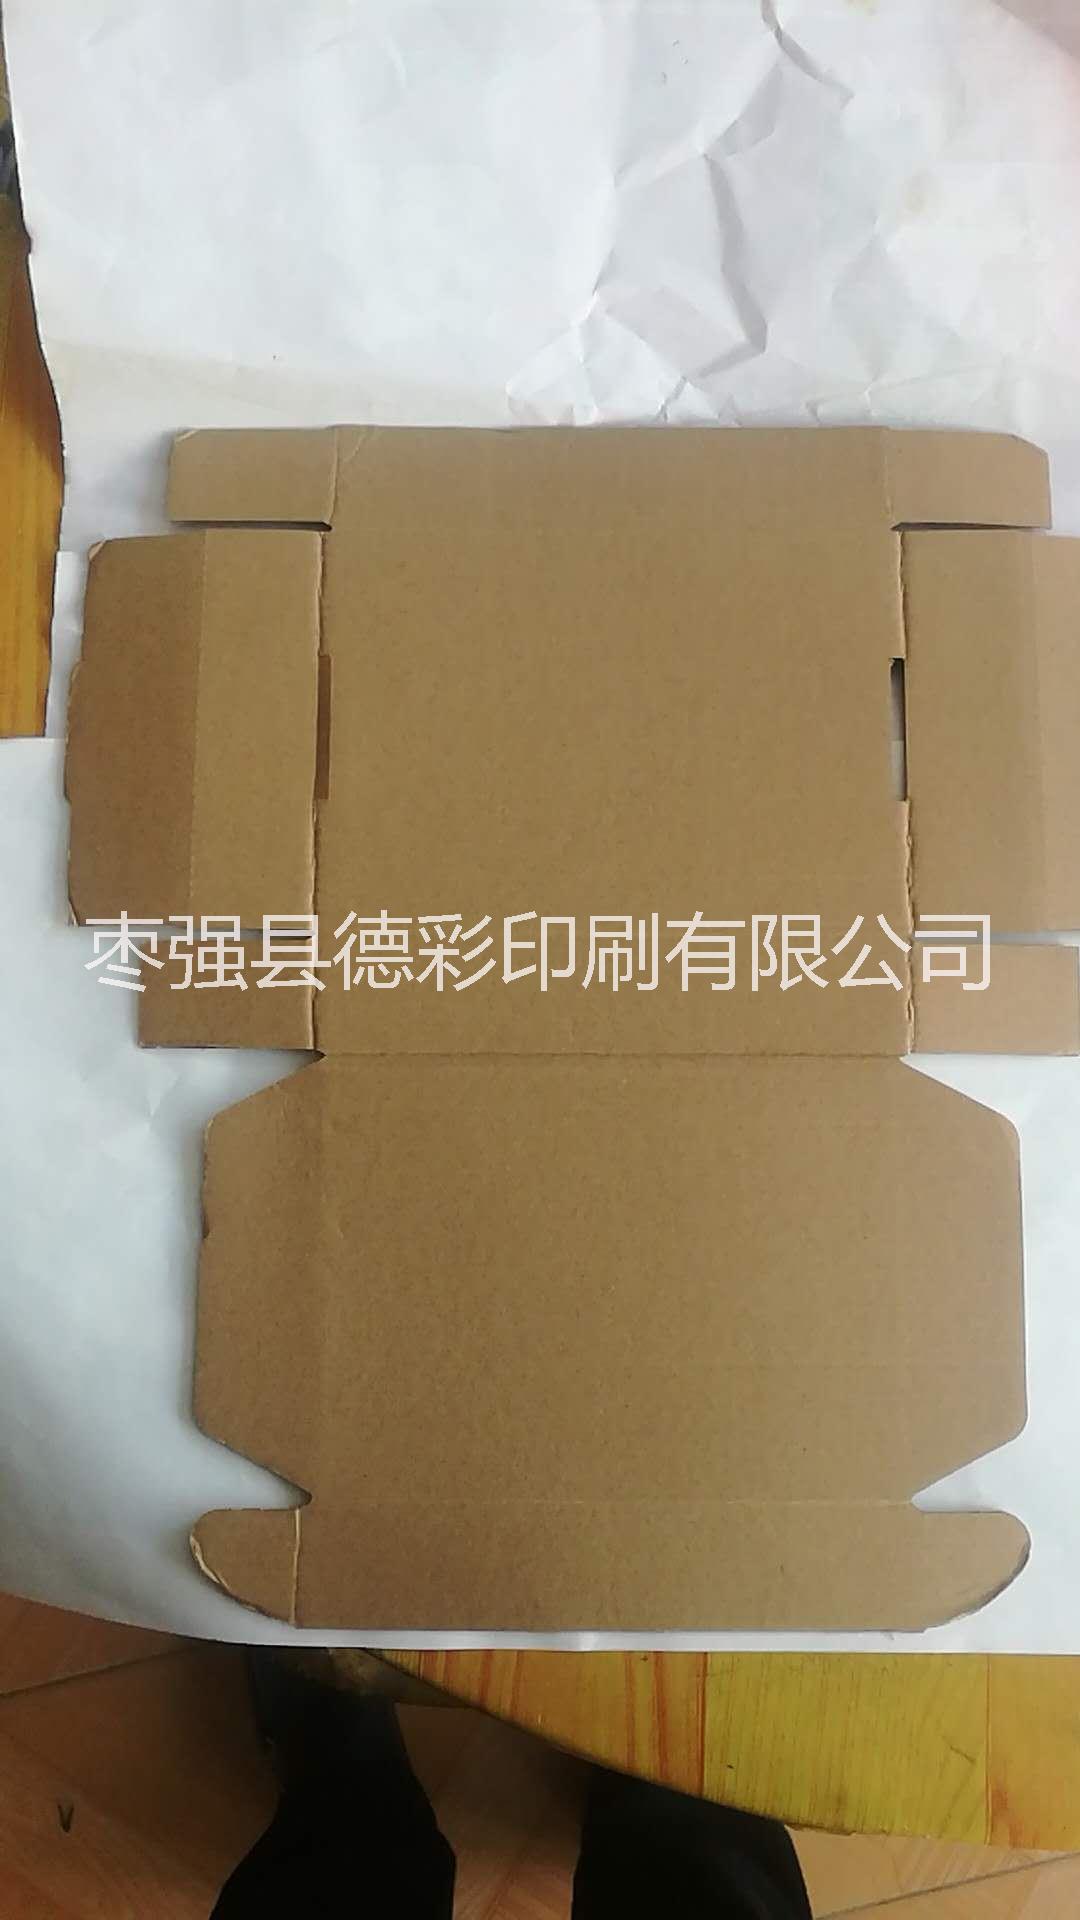 河北衡水 纸盒 纸箱 各种彩色包装盒 飞机盒 异形包装箱图片